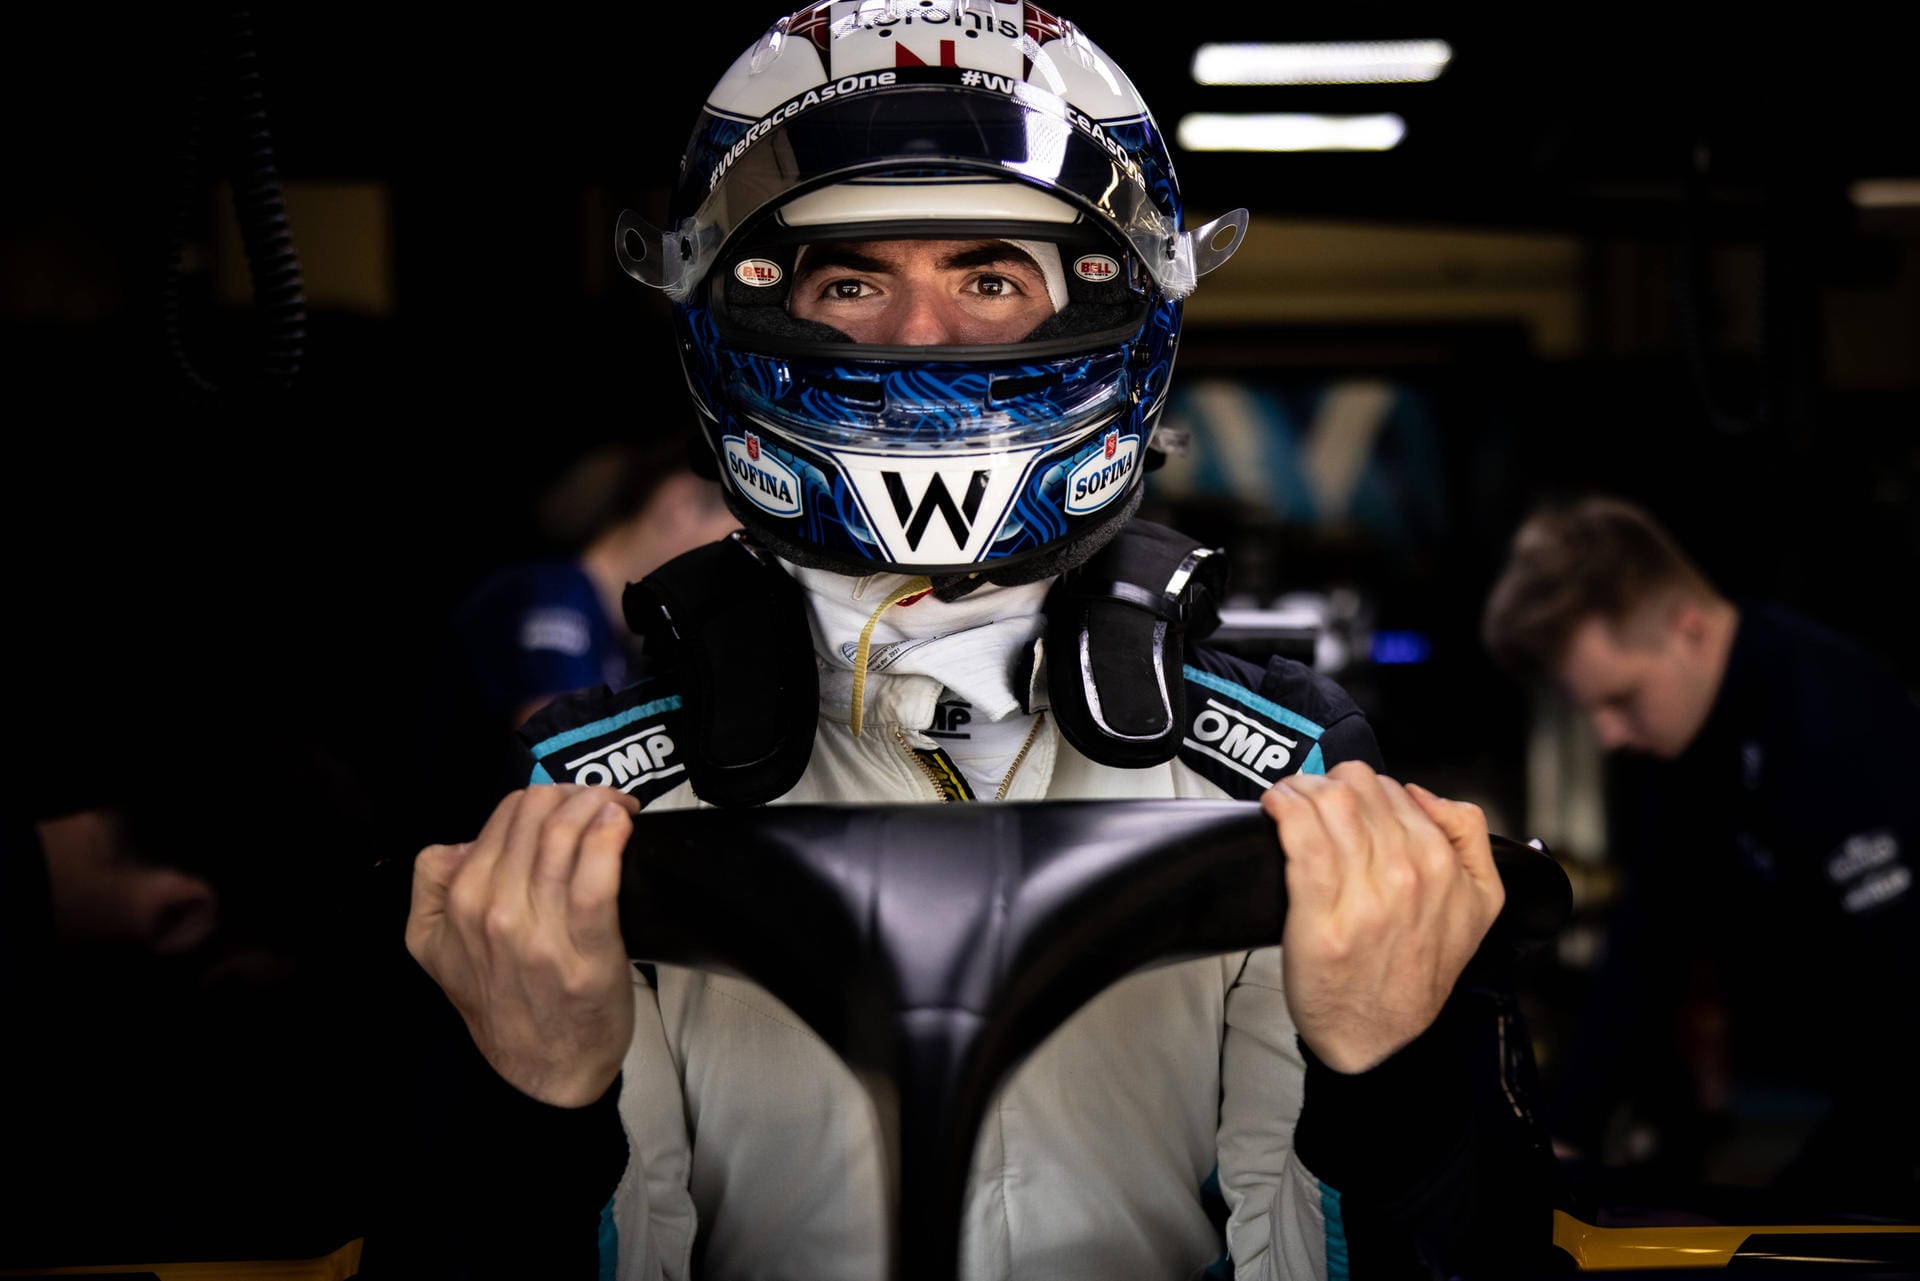 Nicholas Latifi, Williams: Der gebürtige Kanadier gab 2020 sein Debüt in der Formel 1. Fährt seitdem für seinen Rennstall.